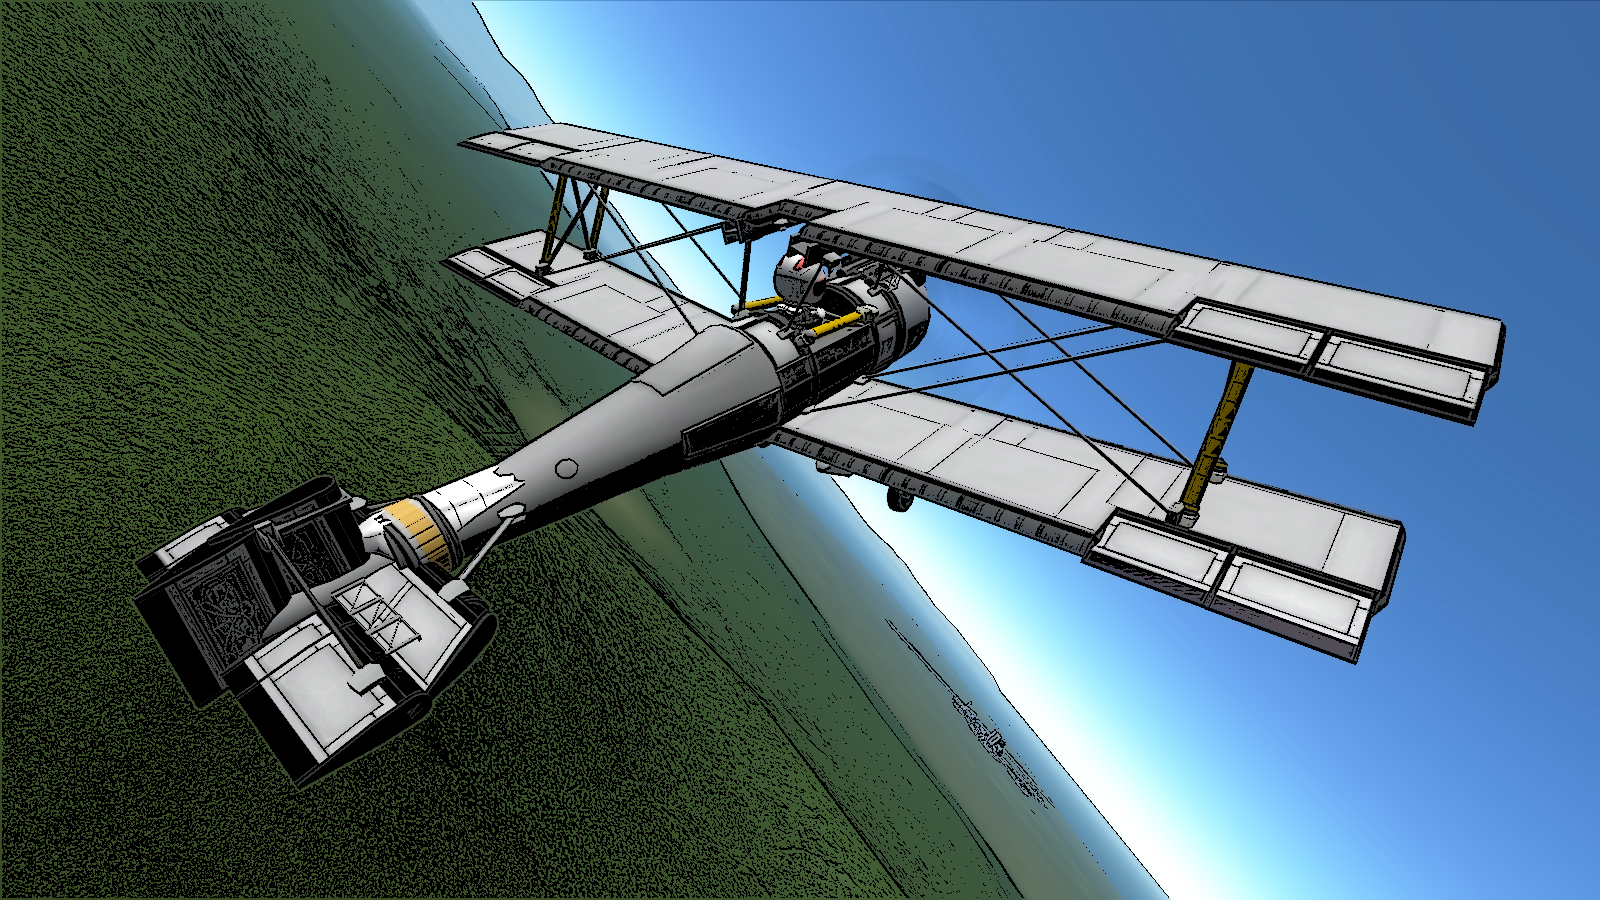 New Wallpaper Biplane - KSP Fan Works - Kerbal Space Program Forums